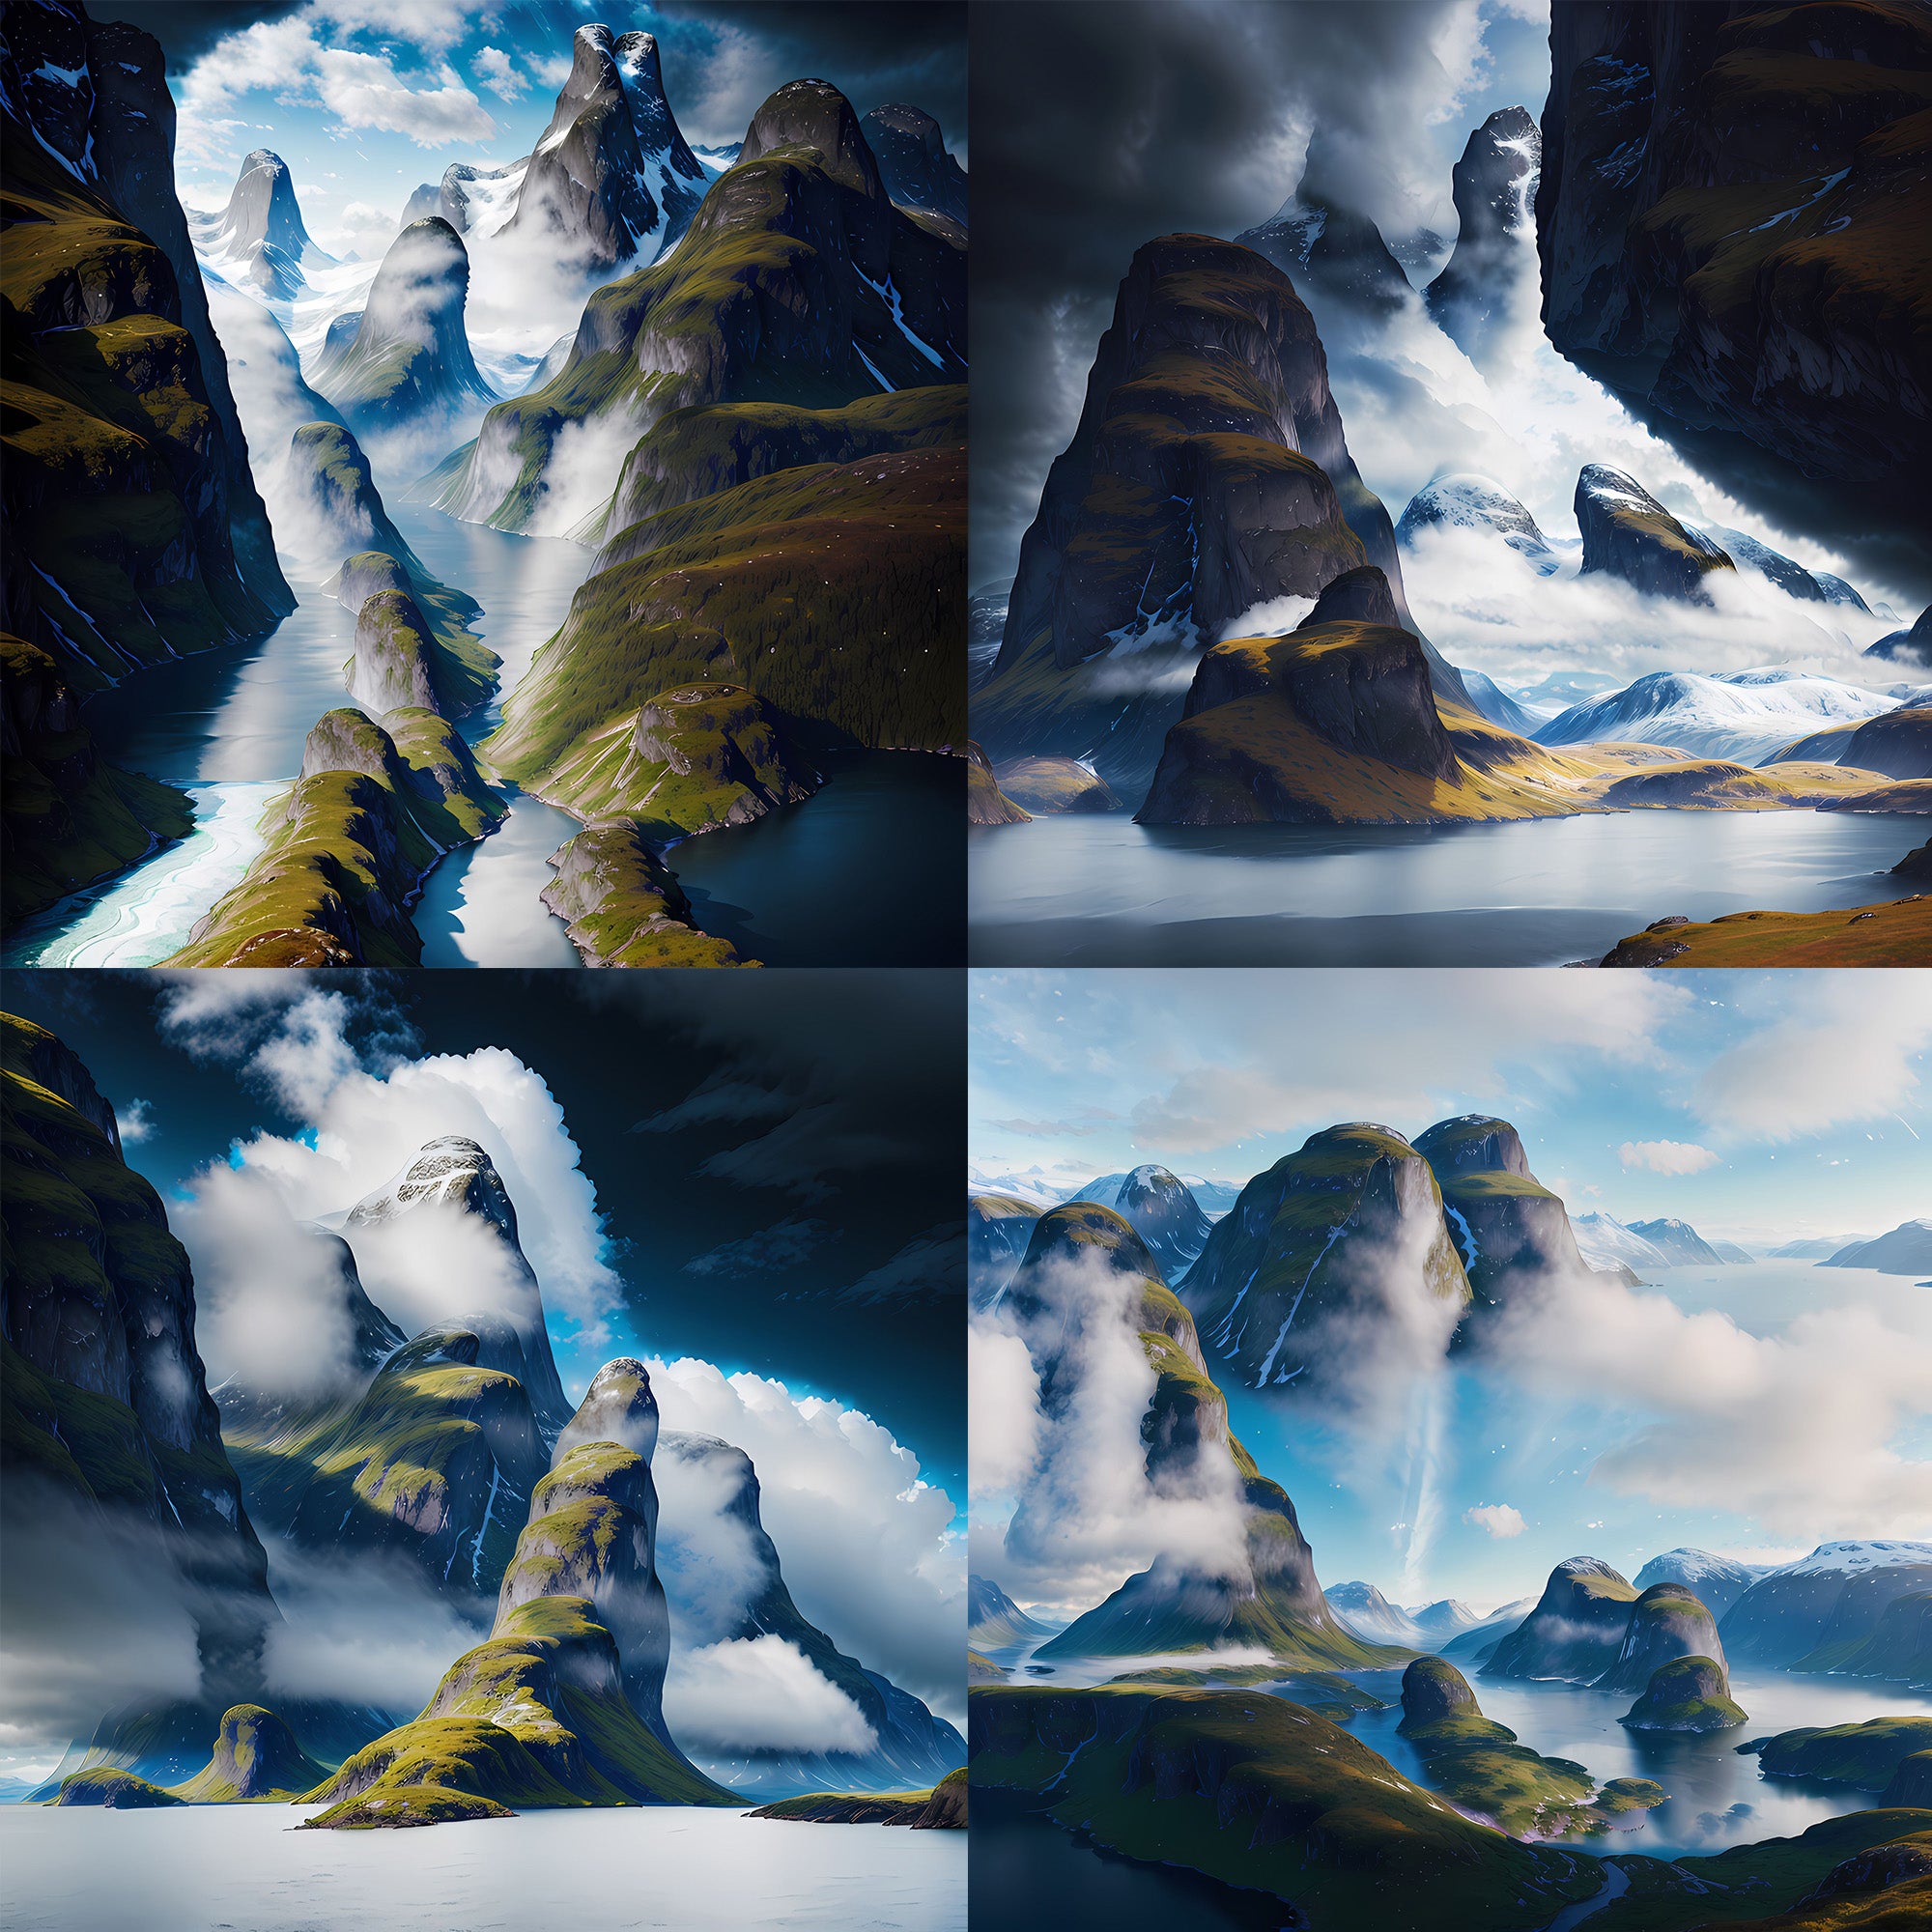 Fjord Fantasy